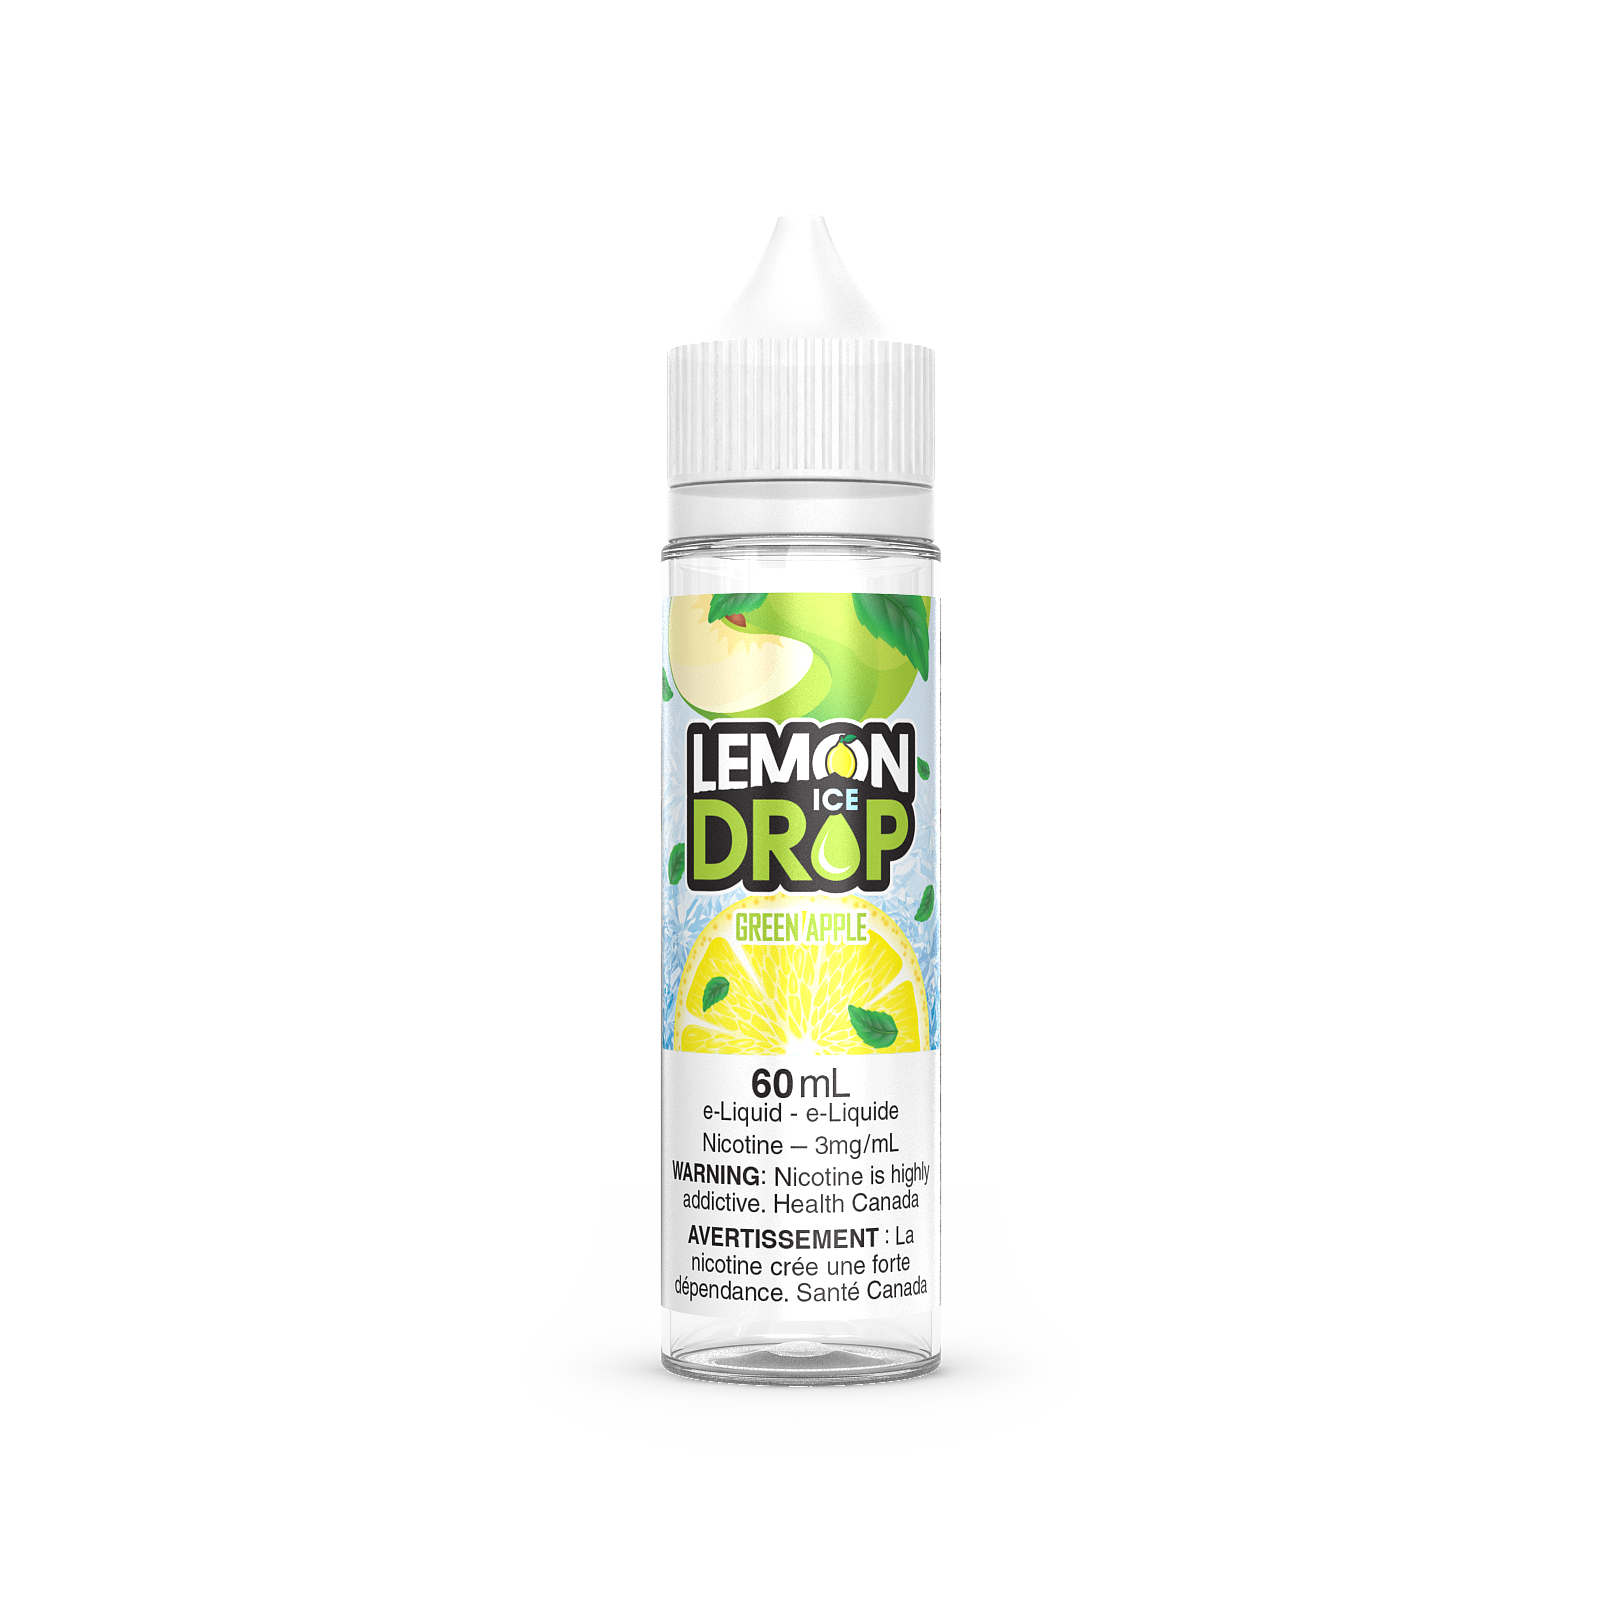 GREEN APPLE - Lemon Drop ICE - 60ml - FREE BASE - E-Liquid